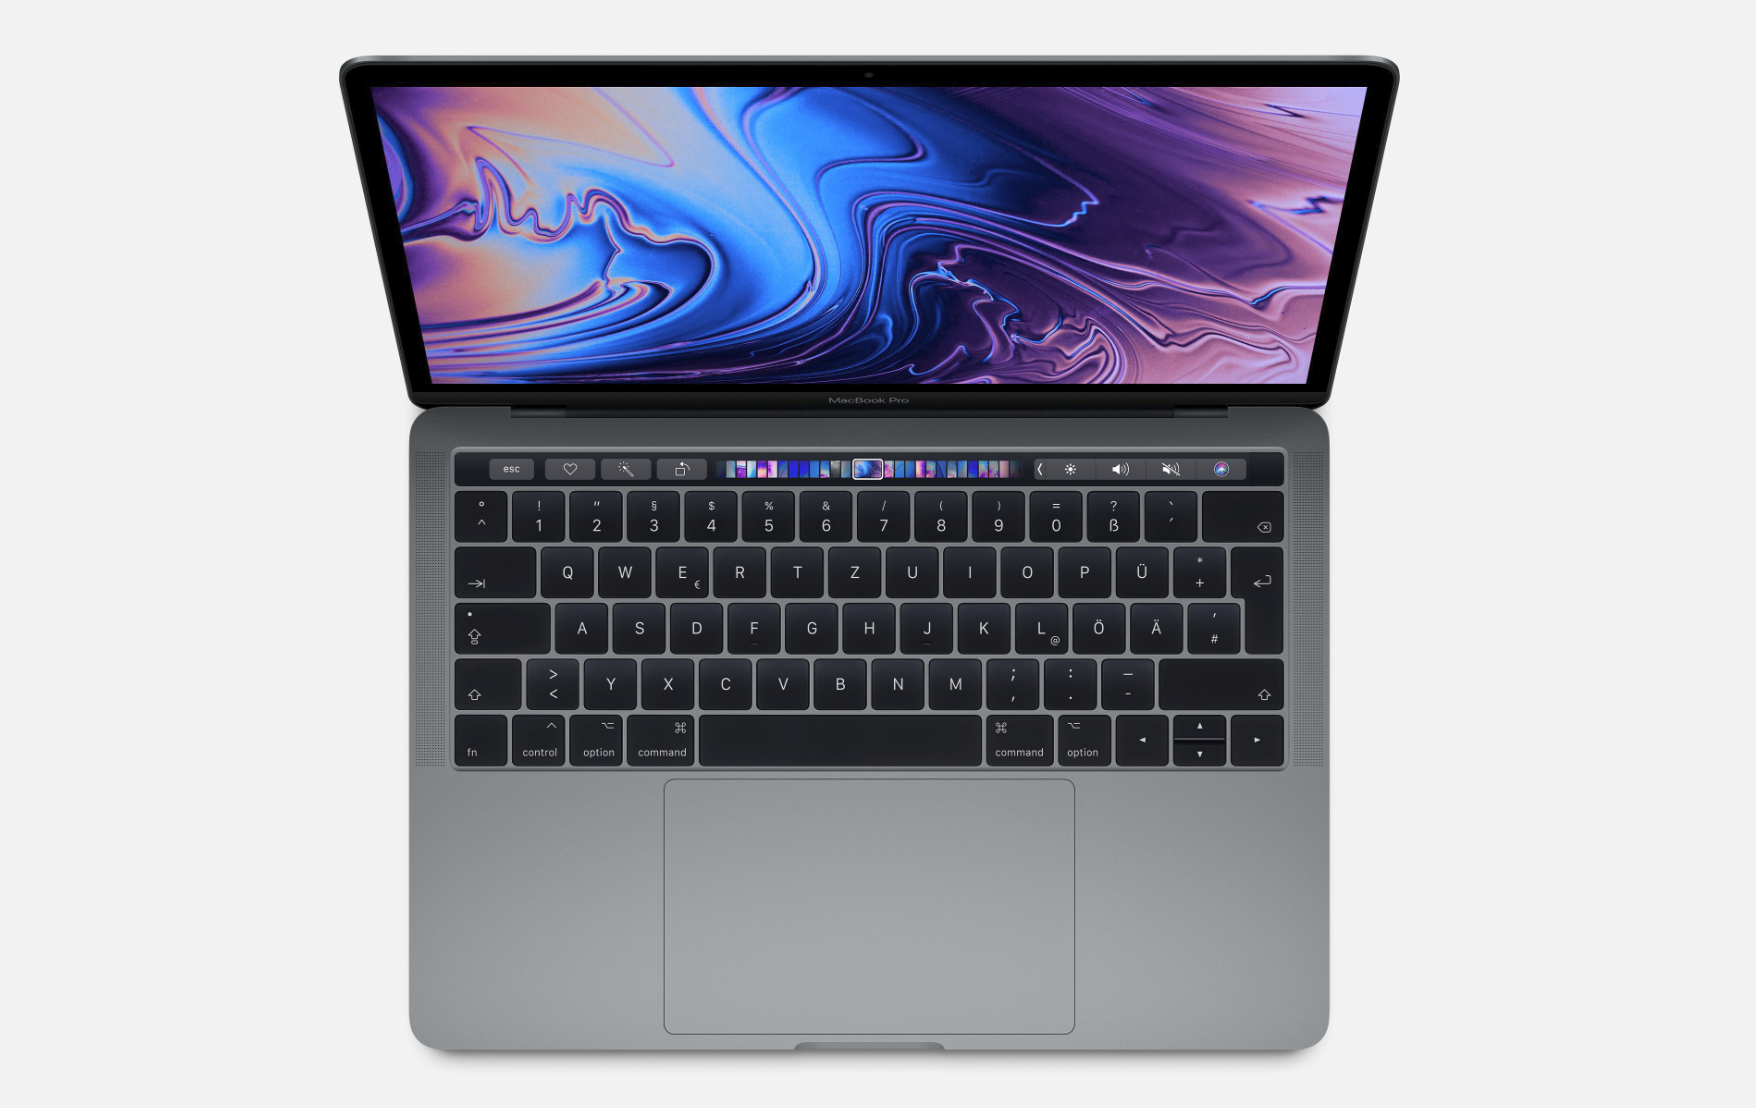 Apple MacBook Pro 13 2019 i5 4TB3 - Notebookcheck.net External Reviews